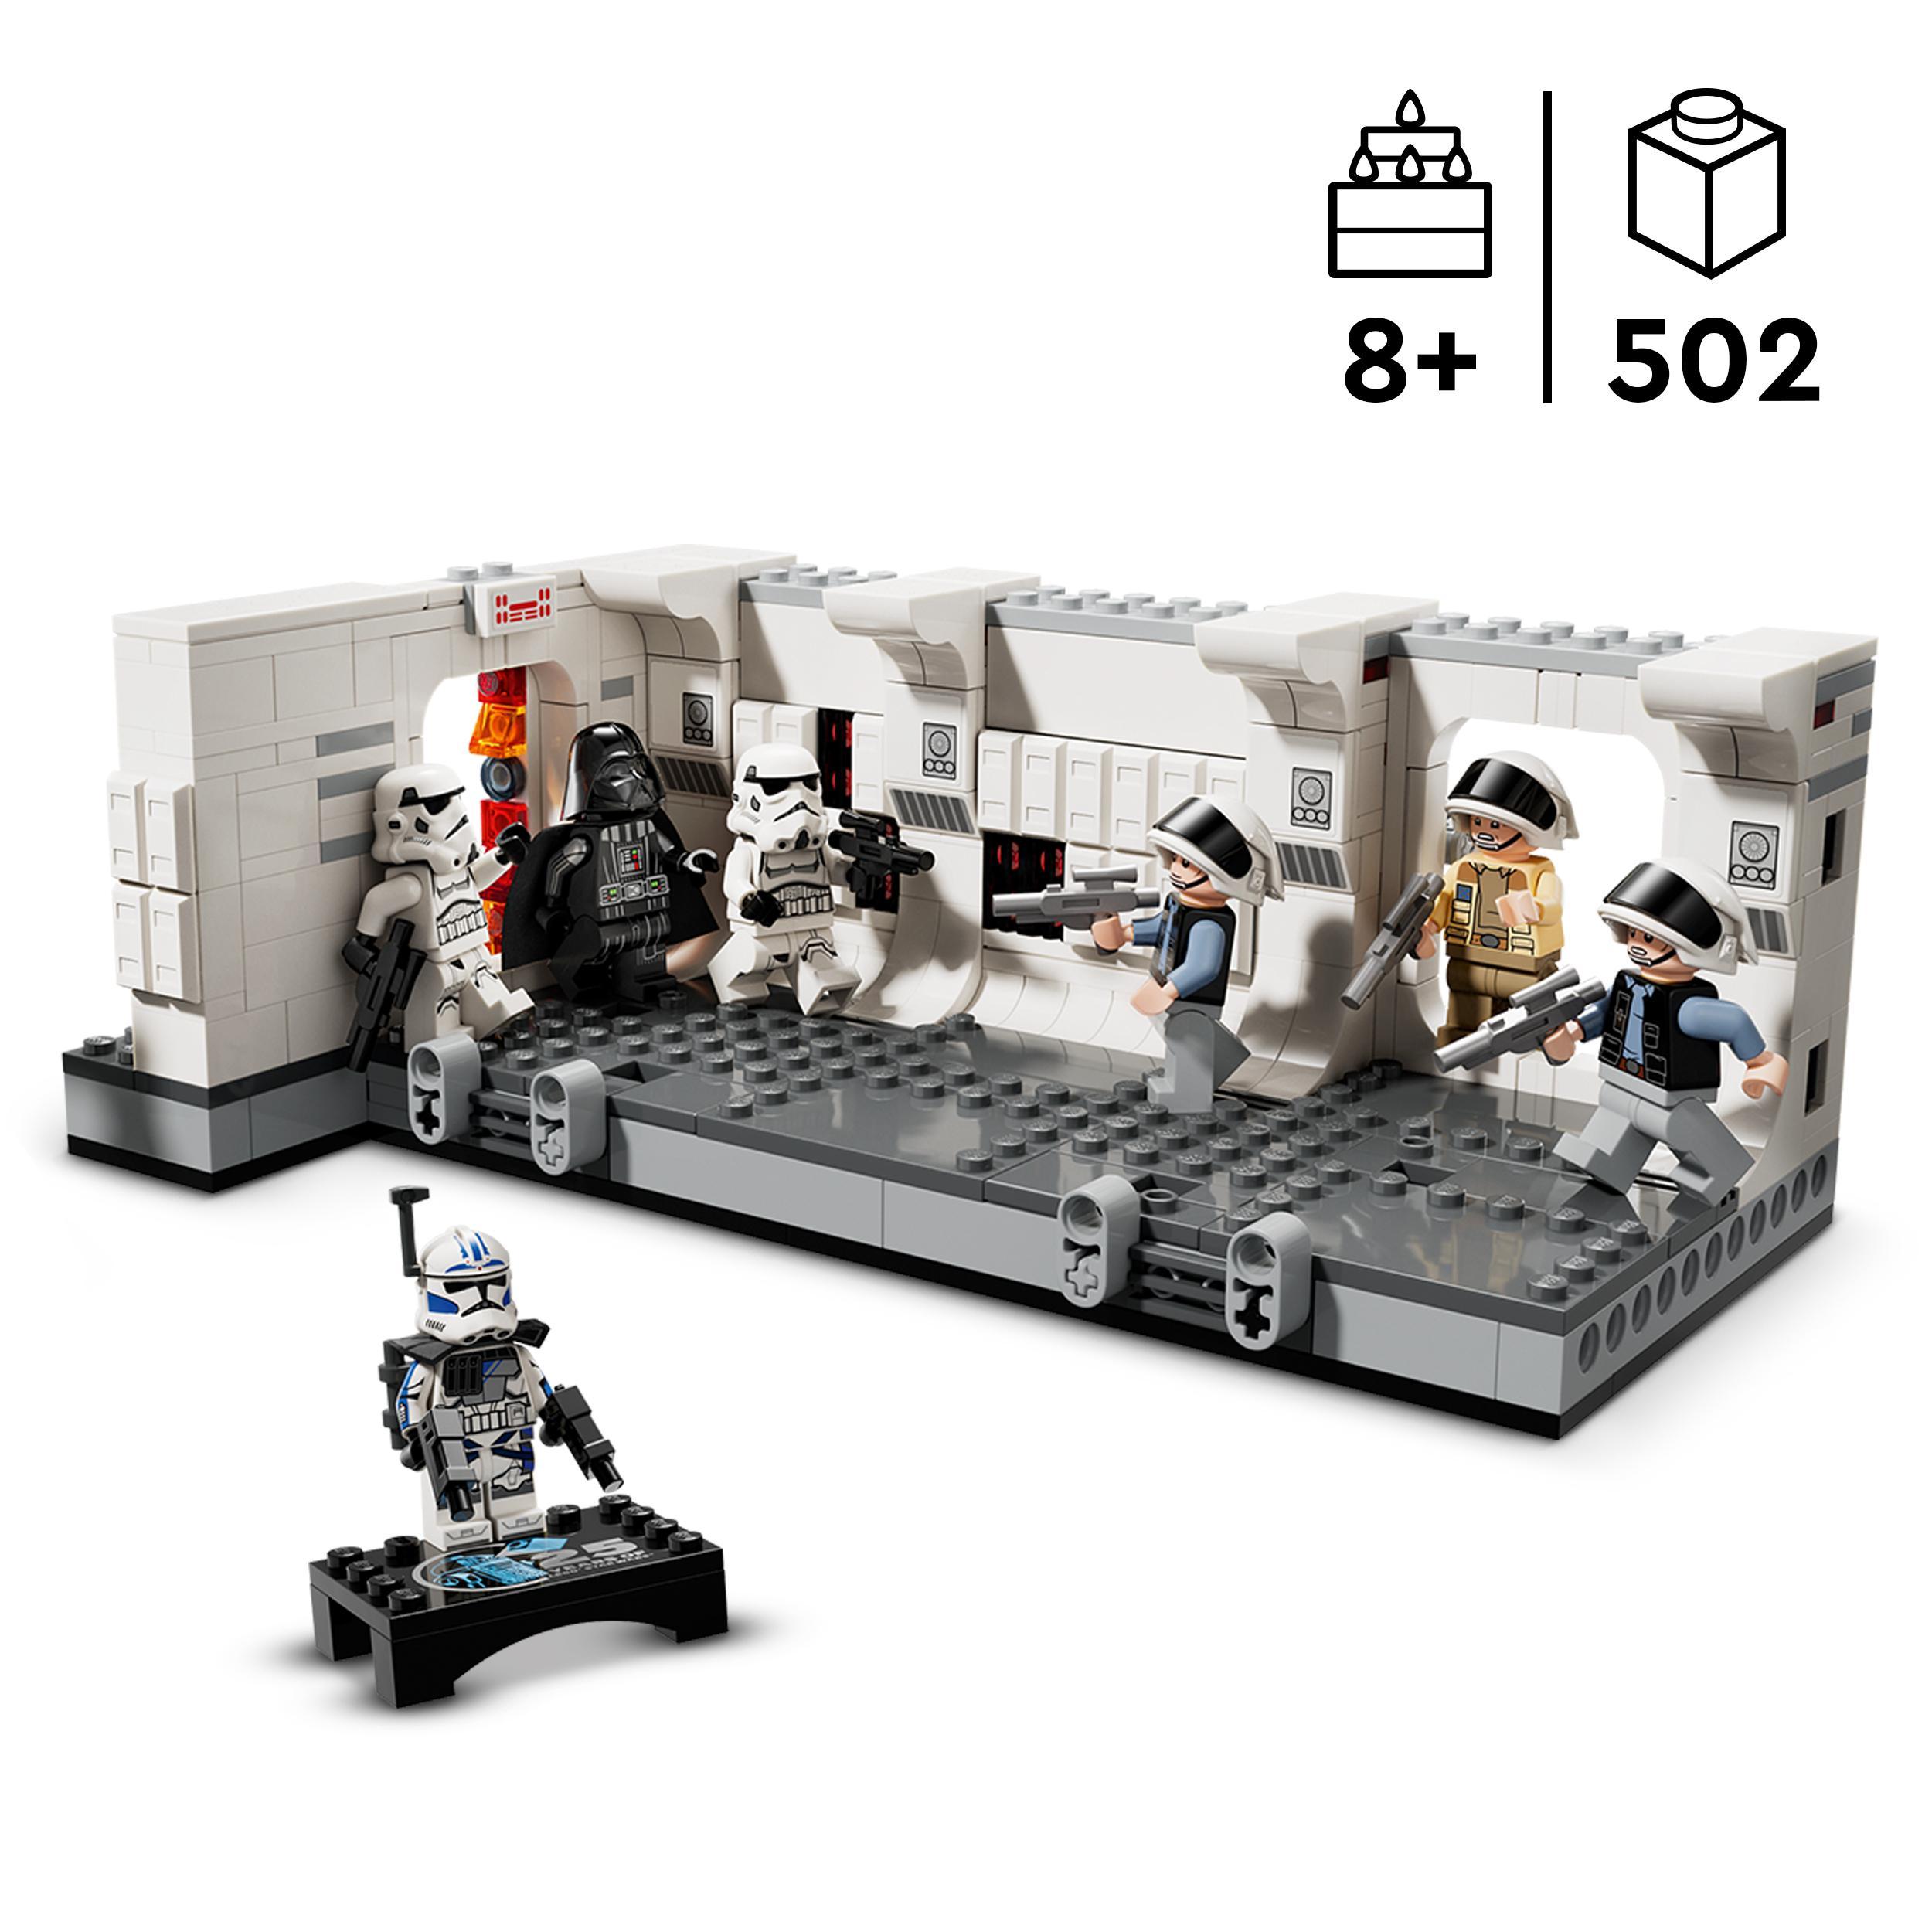 Lego star wars 75387 imbarco sulla tantive iv, giochi bambini 8+, scena nell'astronave giocattolo da costruire con minifigure - LEGO® Star Wars™, Star Wars